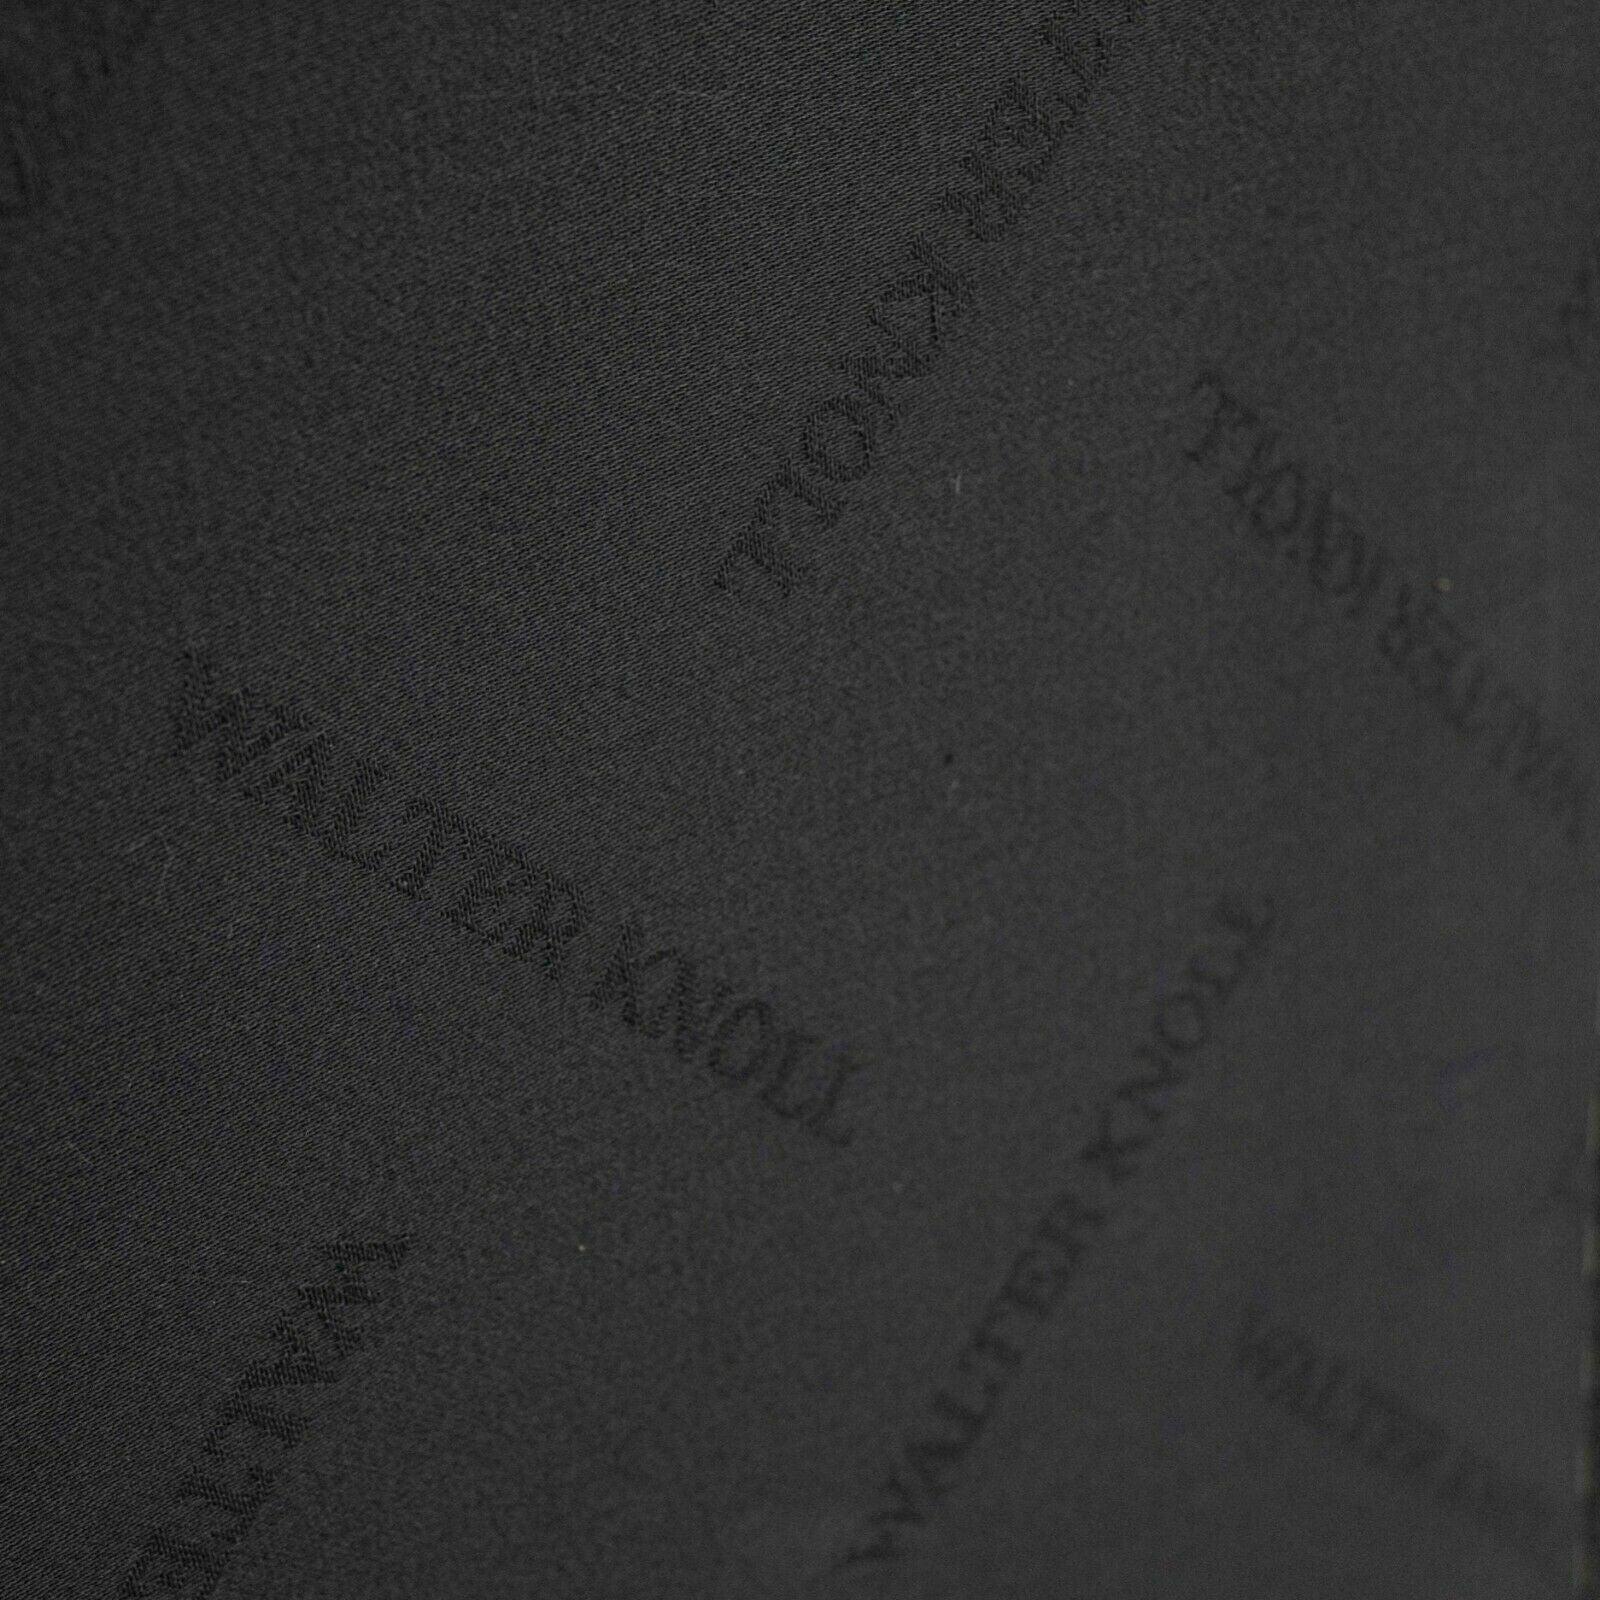 Zum Verkauf steht ein sehr seltener und ungewöhnlicher Walter Knoll 500 Stuhl in schwarzem Leder, entworfen von Lord Norman Foster, dem berühmten britischen Architekten. Walter-Knoll-Stücke sind in den USA außerordentlich schwer zu finden. Ein Grund